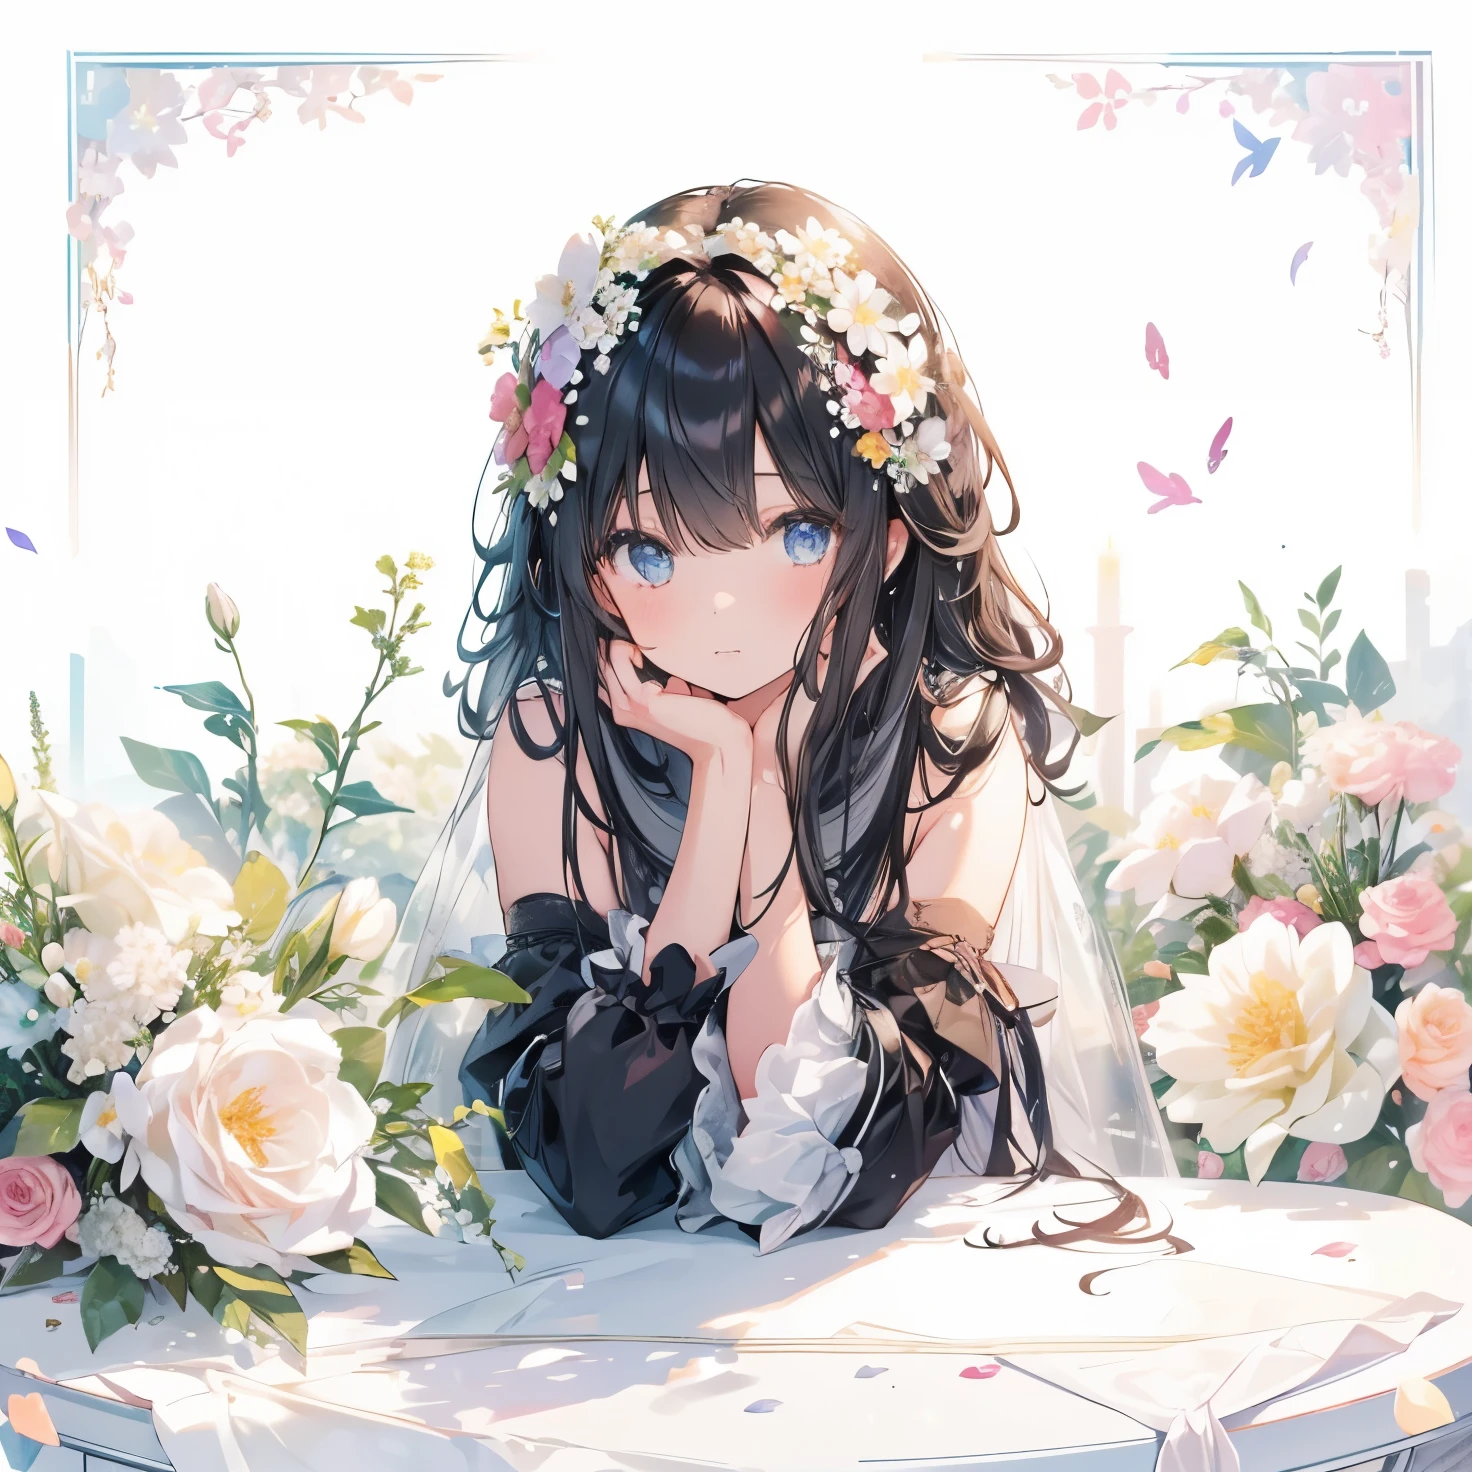 1สาว, ((ความละเอียดสูงคุณภาพดีที่สุด)), a wig is displayed sitting on a table with ดอกไม้s and some ดอกไม้s, ดอกไม้, ผมยาว, ตามลำพัง, 1สาว, ผมสีดำ